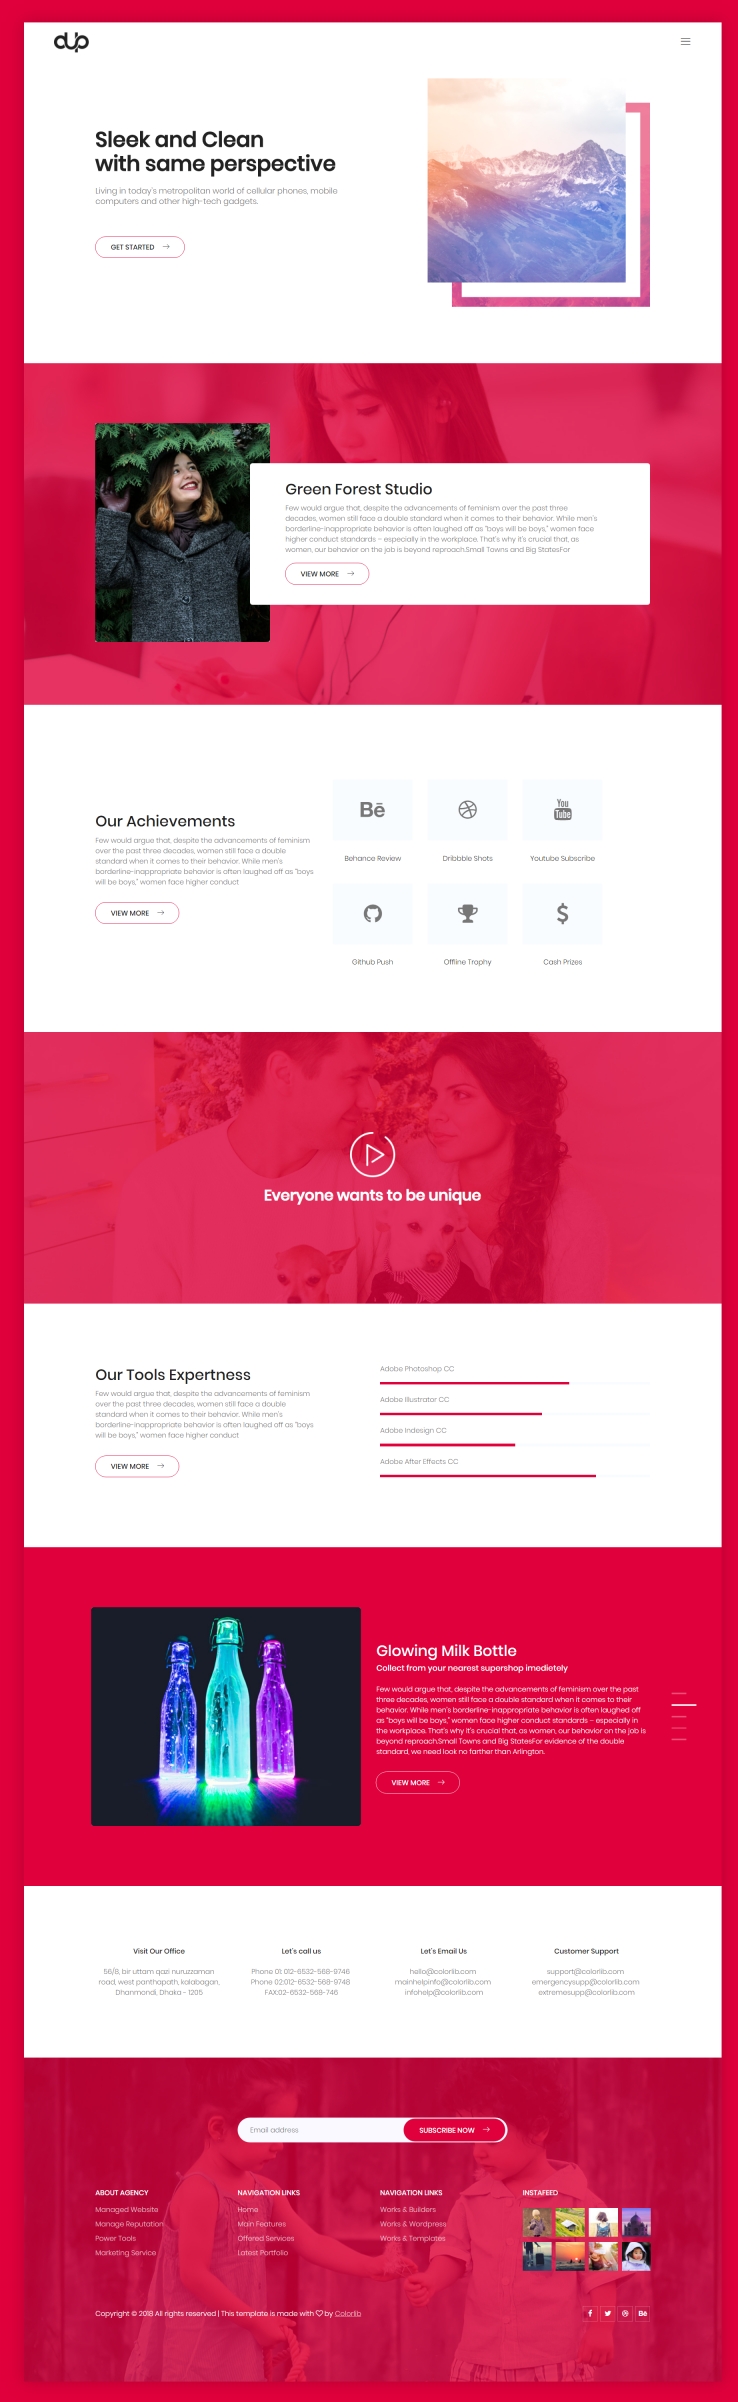 红色欧美风格响应式产品商务展示网页模板